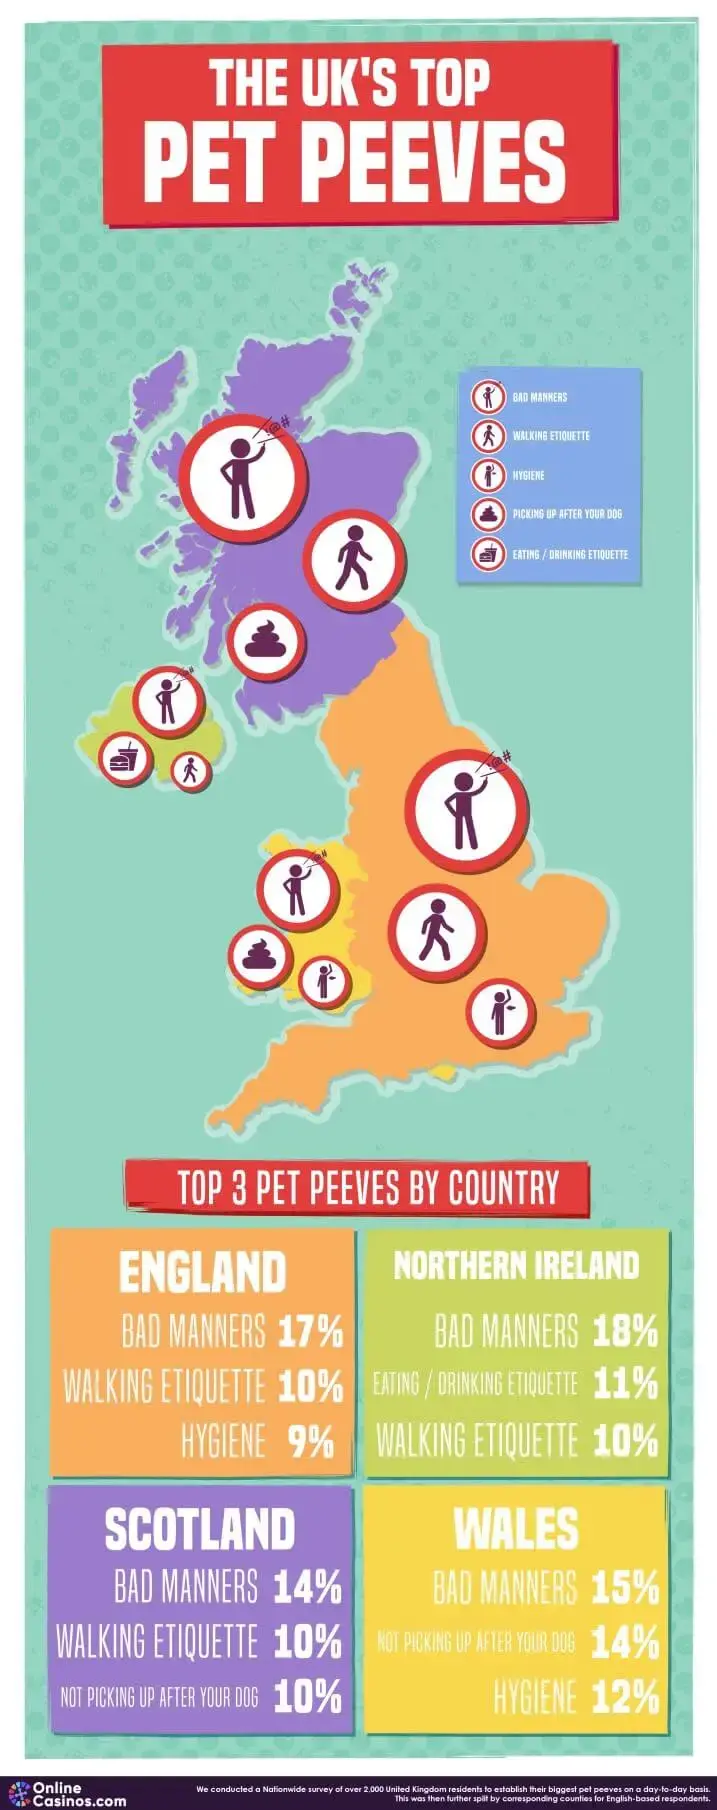 The UK’s Top Pet Peeves